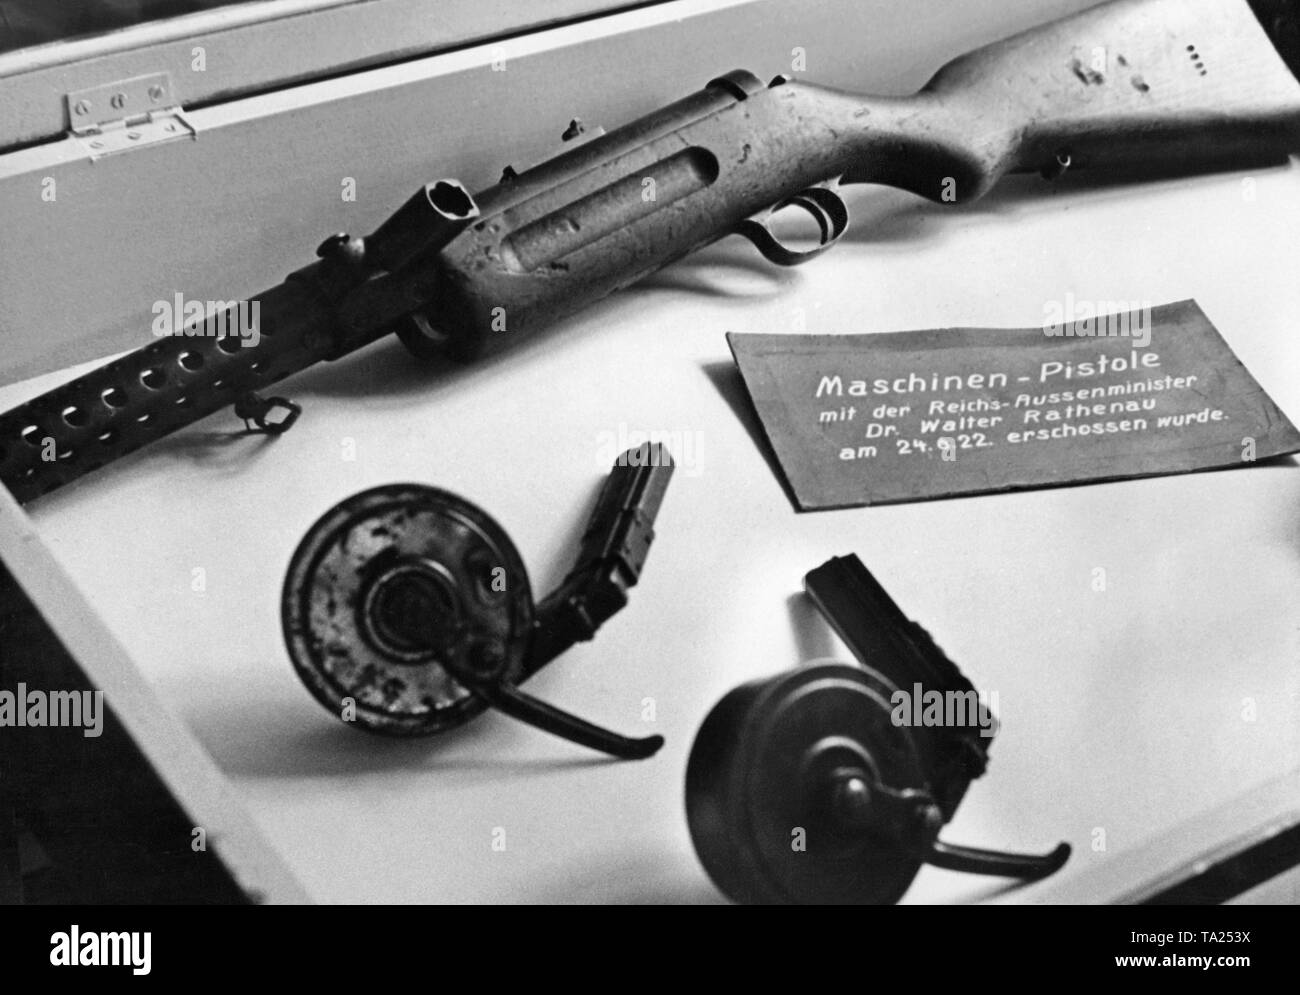 Reich Außenminister Walther Rathenau wurde in einen Angriff mit den illustrierten Maschinenpistole ermordet (als Zeichen erklärt) am 24 Juni, 1922. Stockfoto